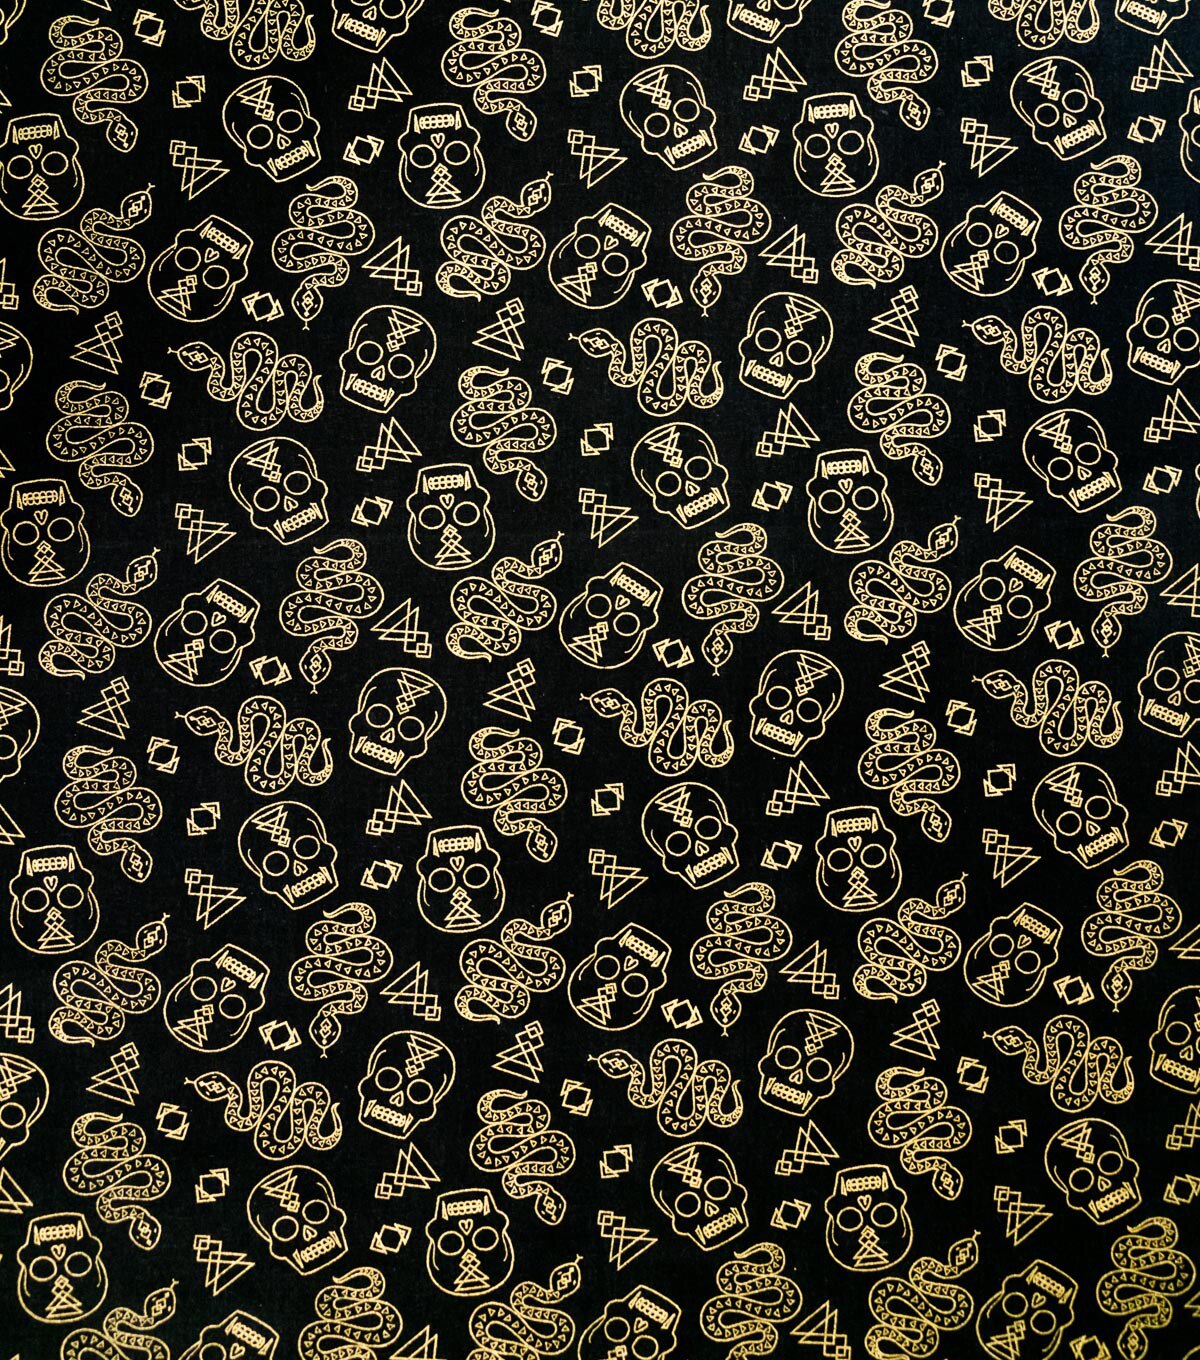 Snakes and Skulls Metallic Halloween Cotton Fabric | JOANN